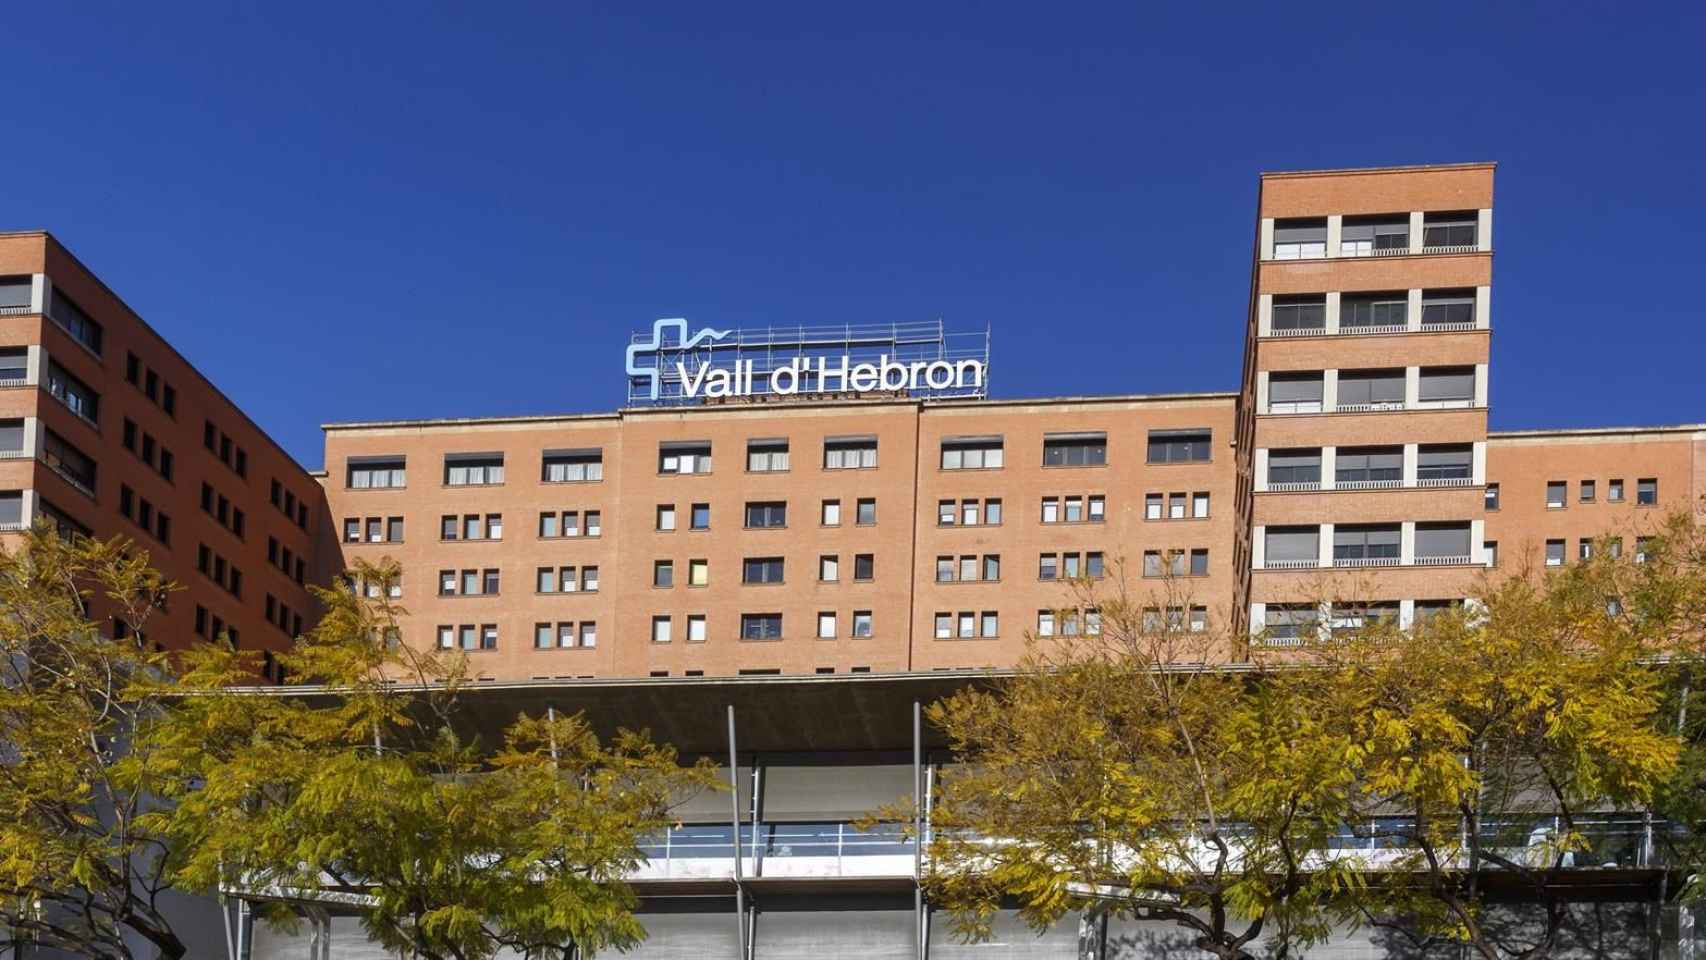 Hospital Vall d'Hebron / QUIM ROSER